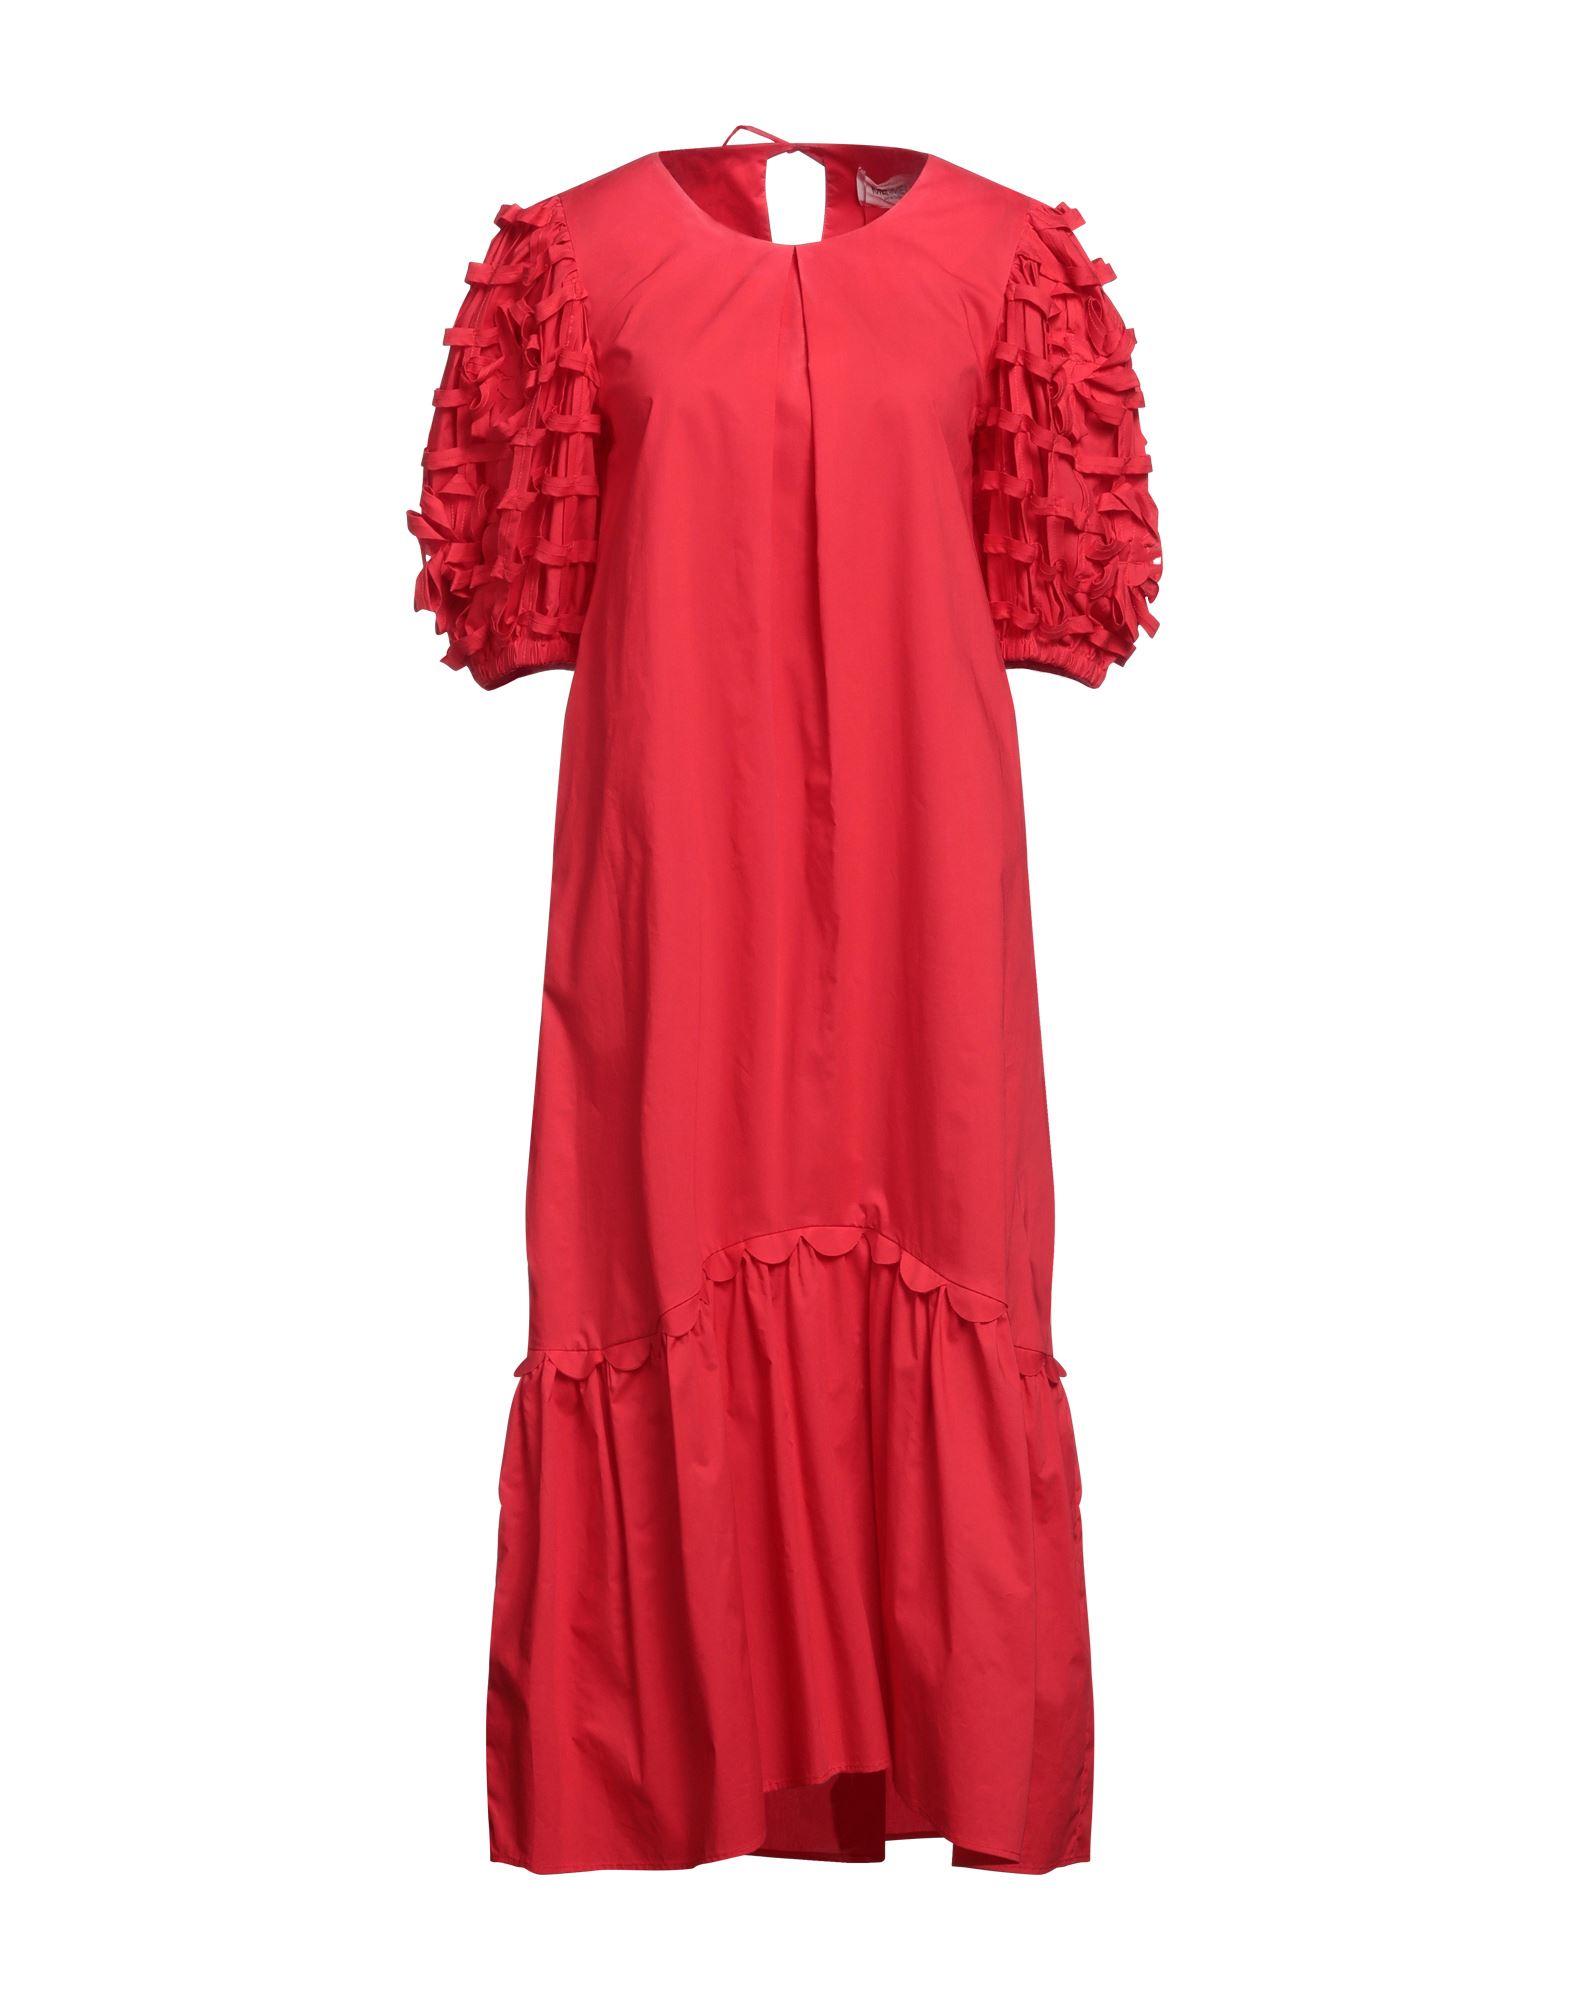 MEIMEIJ Midi-kleid Damen Rot von MEIMEIJ